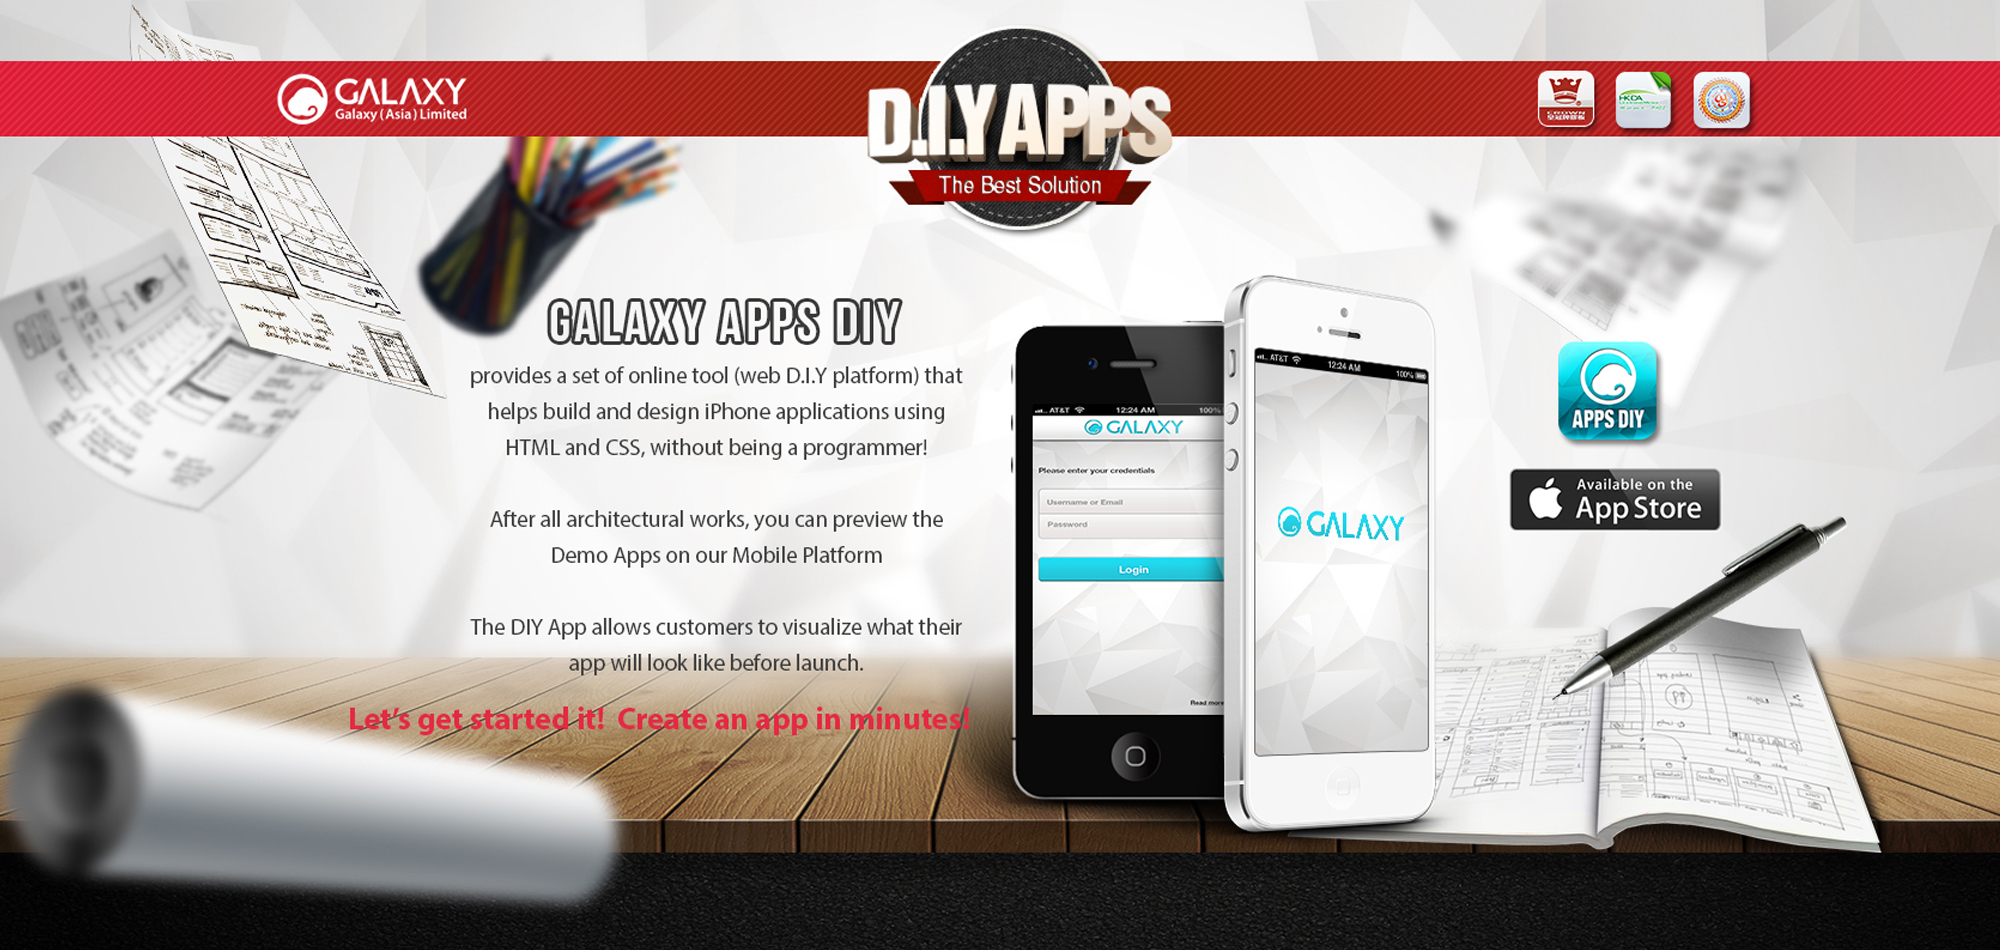 GALAXY DIY Apps - DIY App Solution